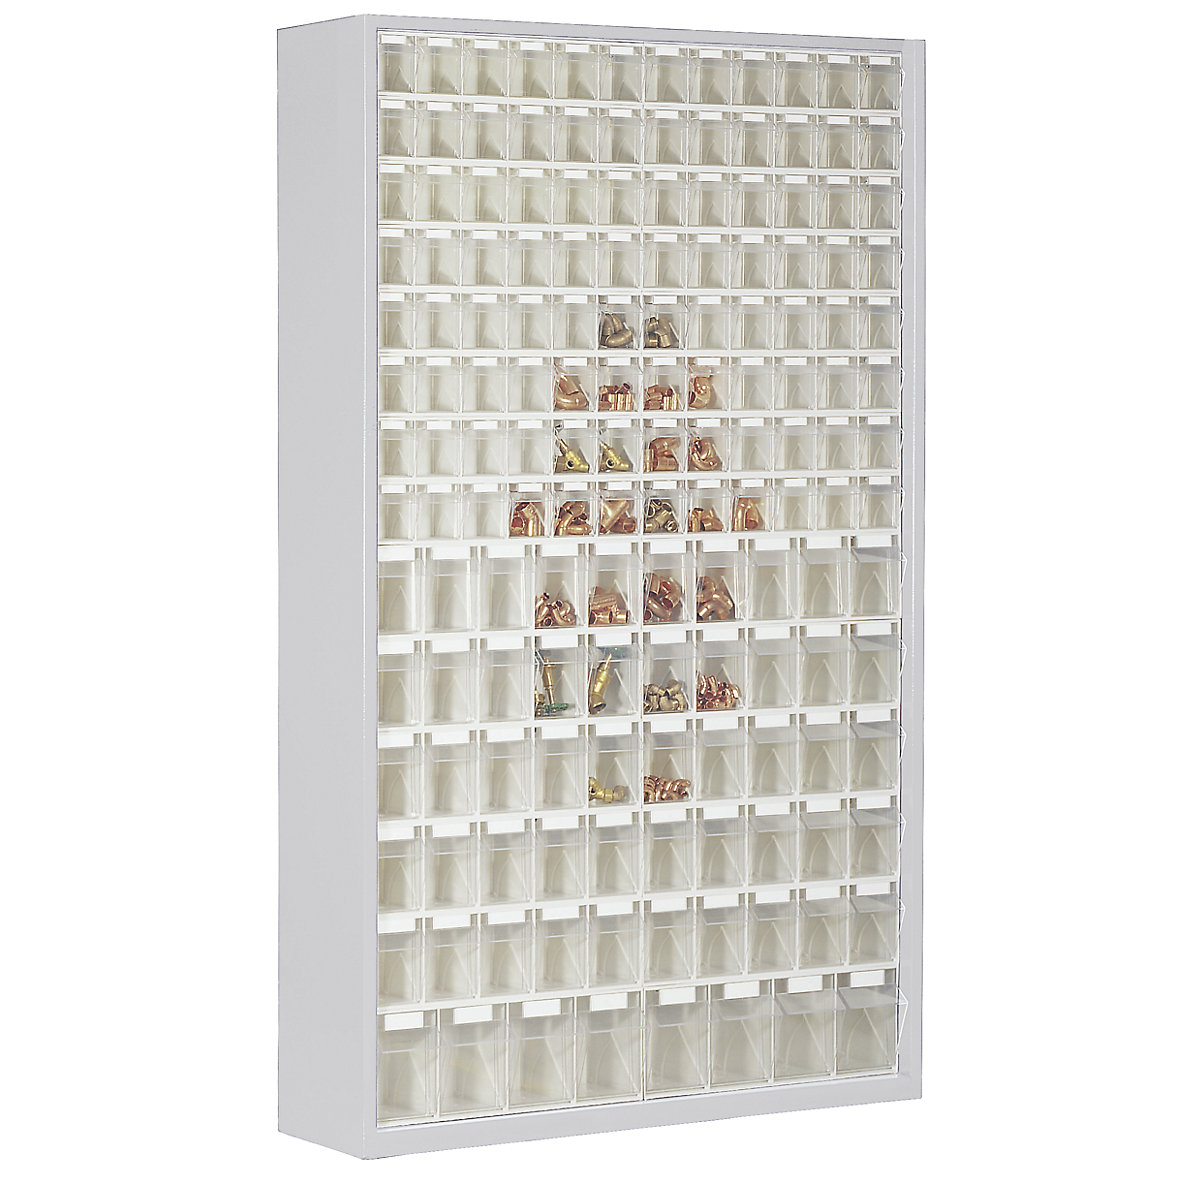 Armario-almacén de chapa de acero, con 154 cajas plegables transparentes, gris luminoso